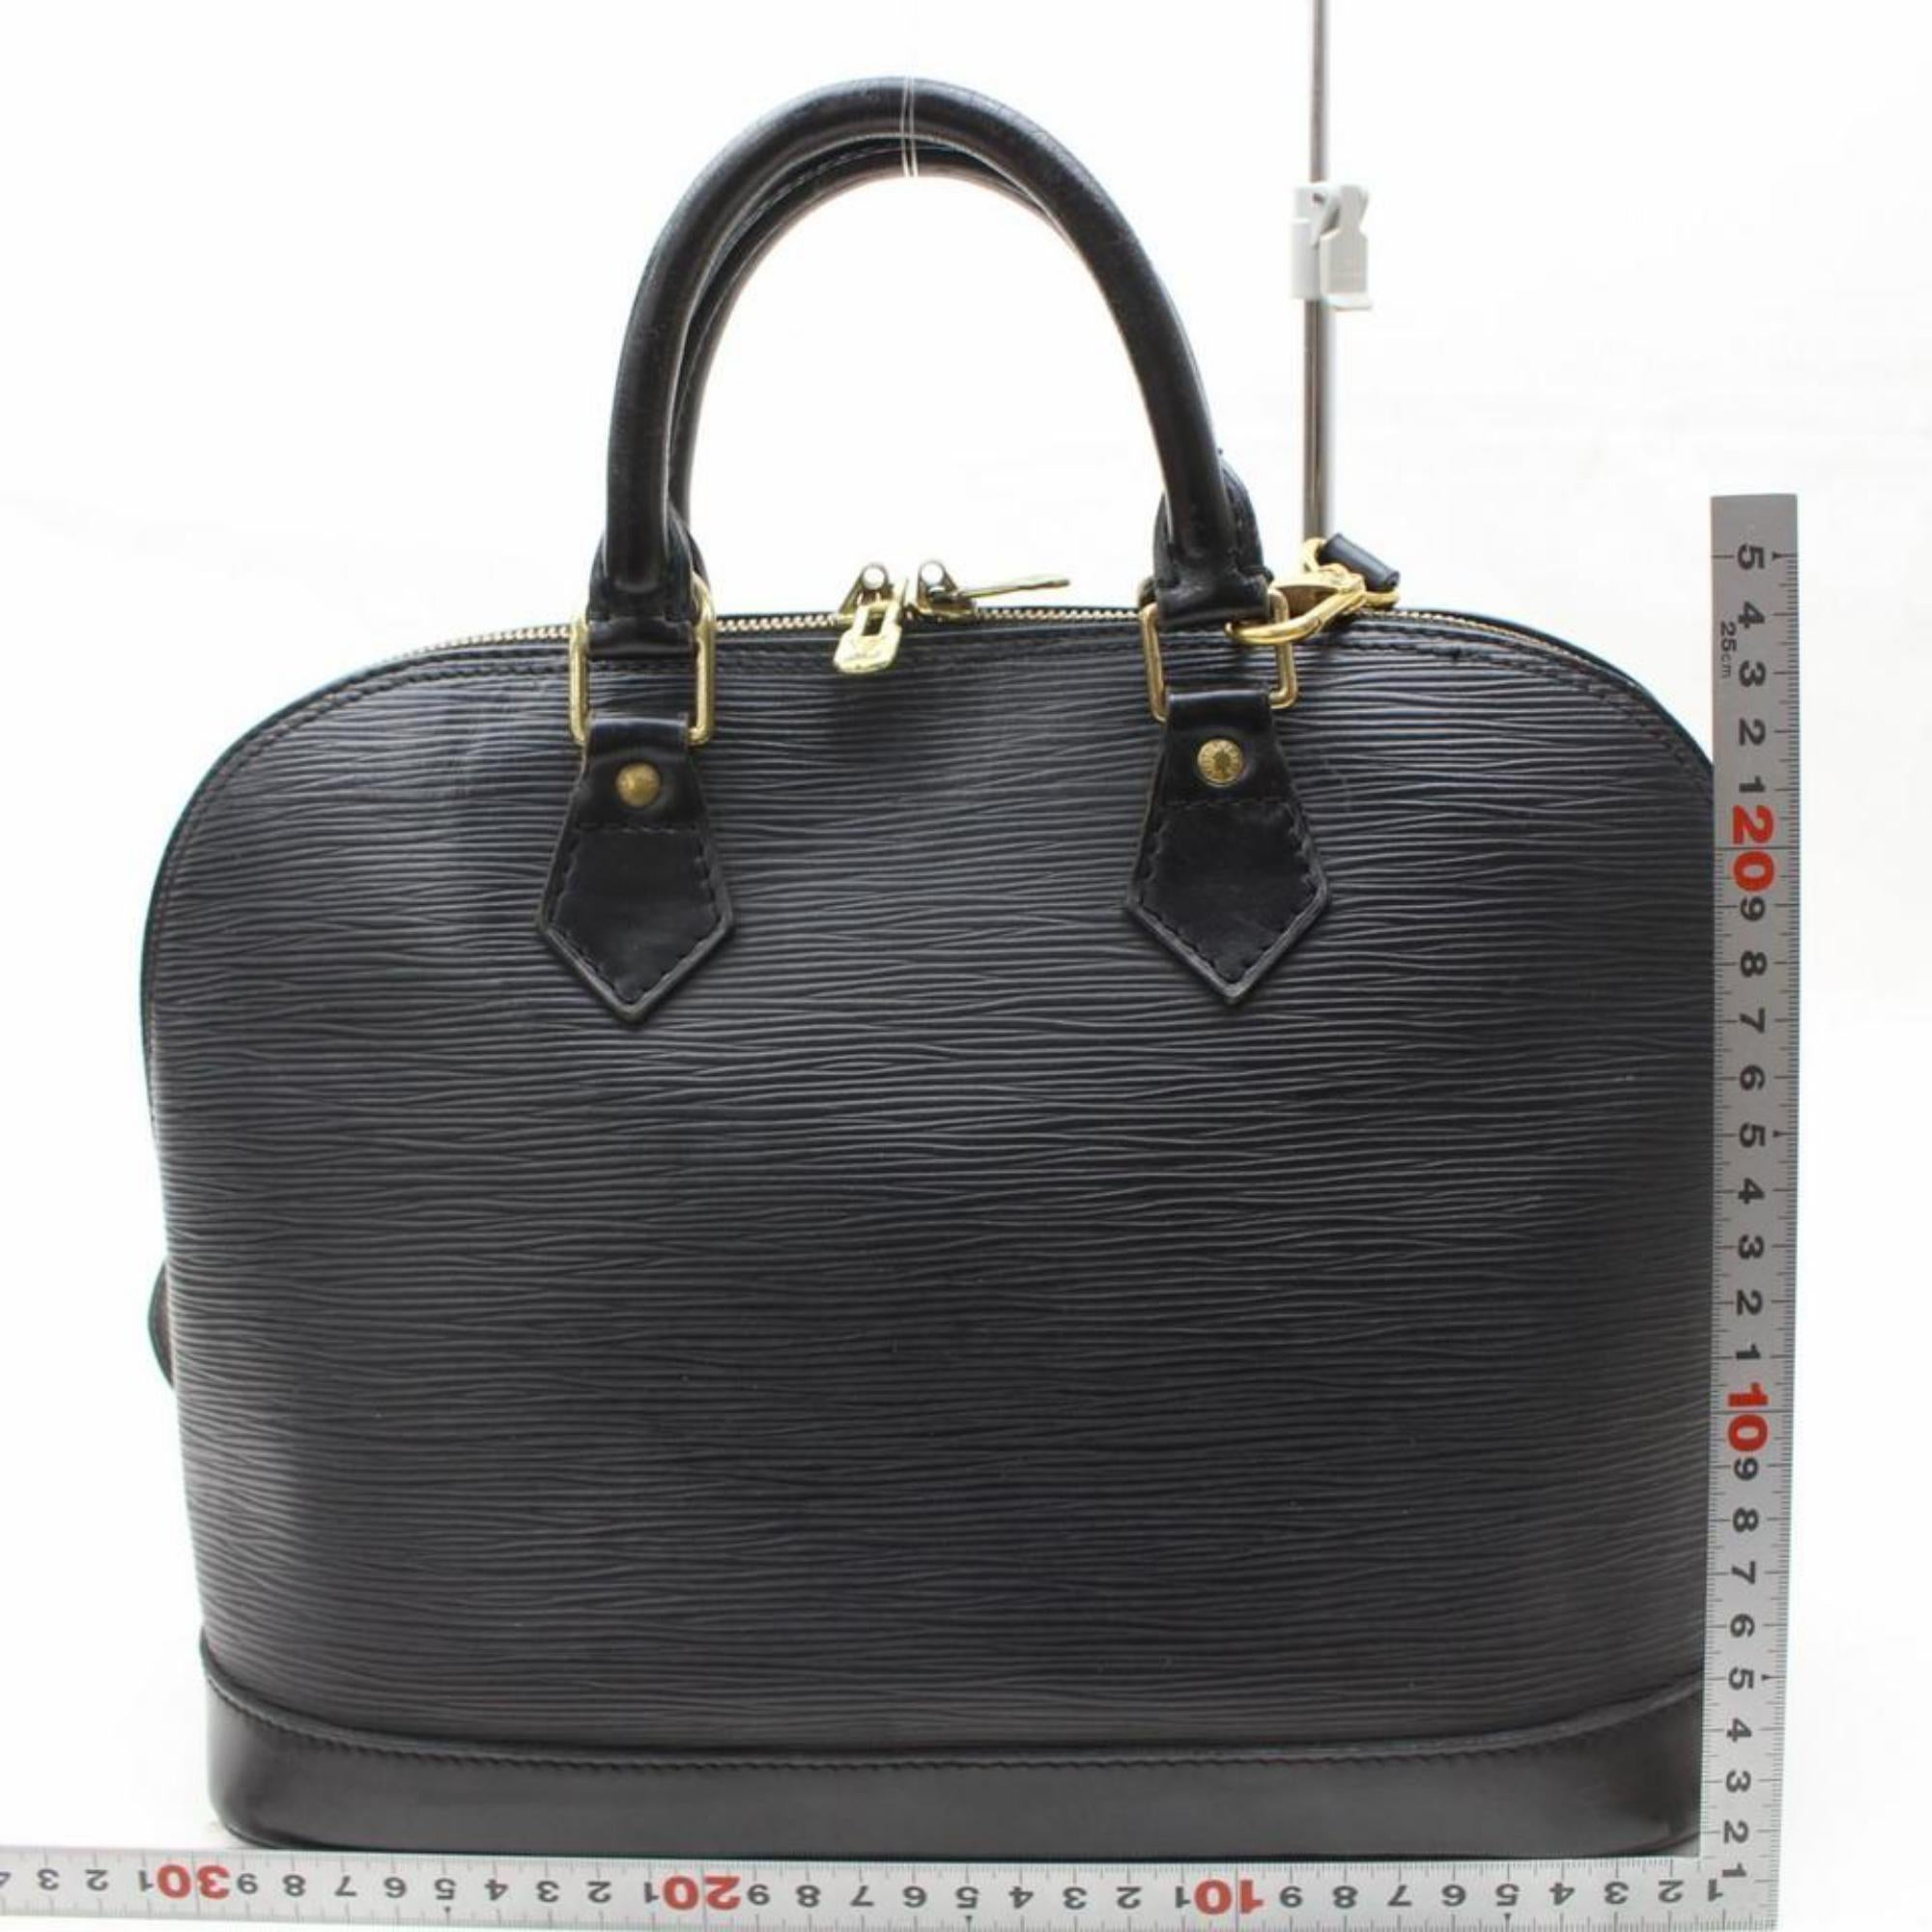 Louis Vuitton Alma Noir with Strap 868643 Black Leather Satchel For Sale 2